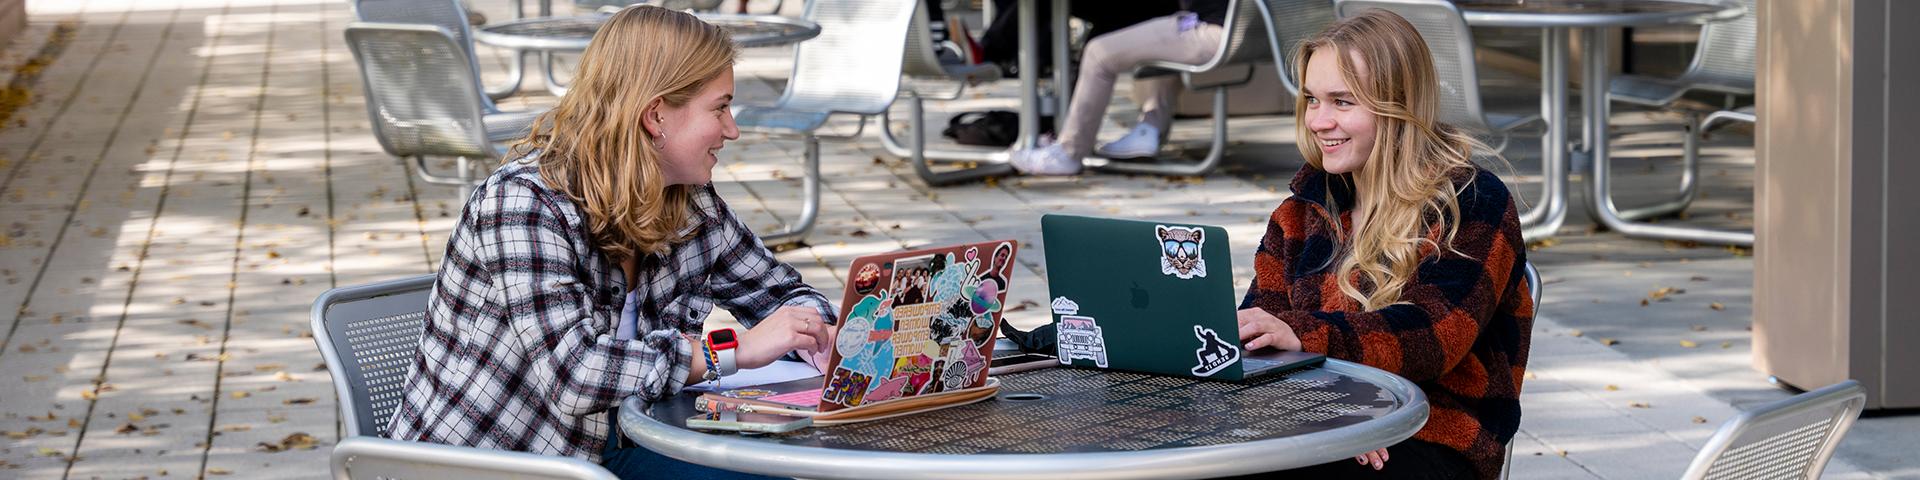 两个女学生坐在盖奇外面的笔记本电脑上